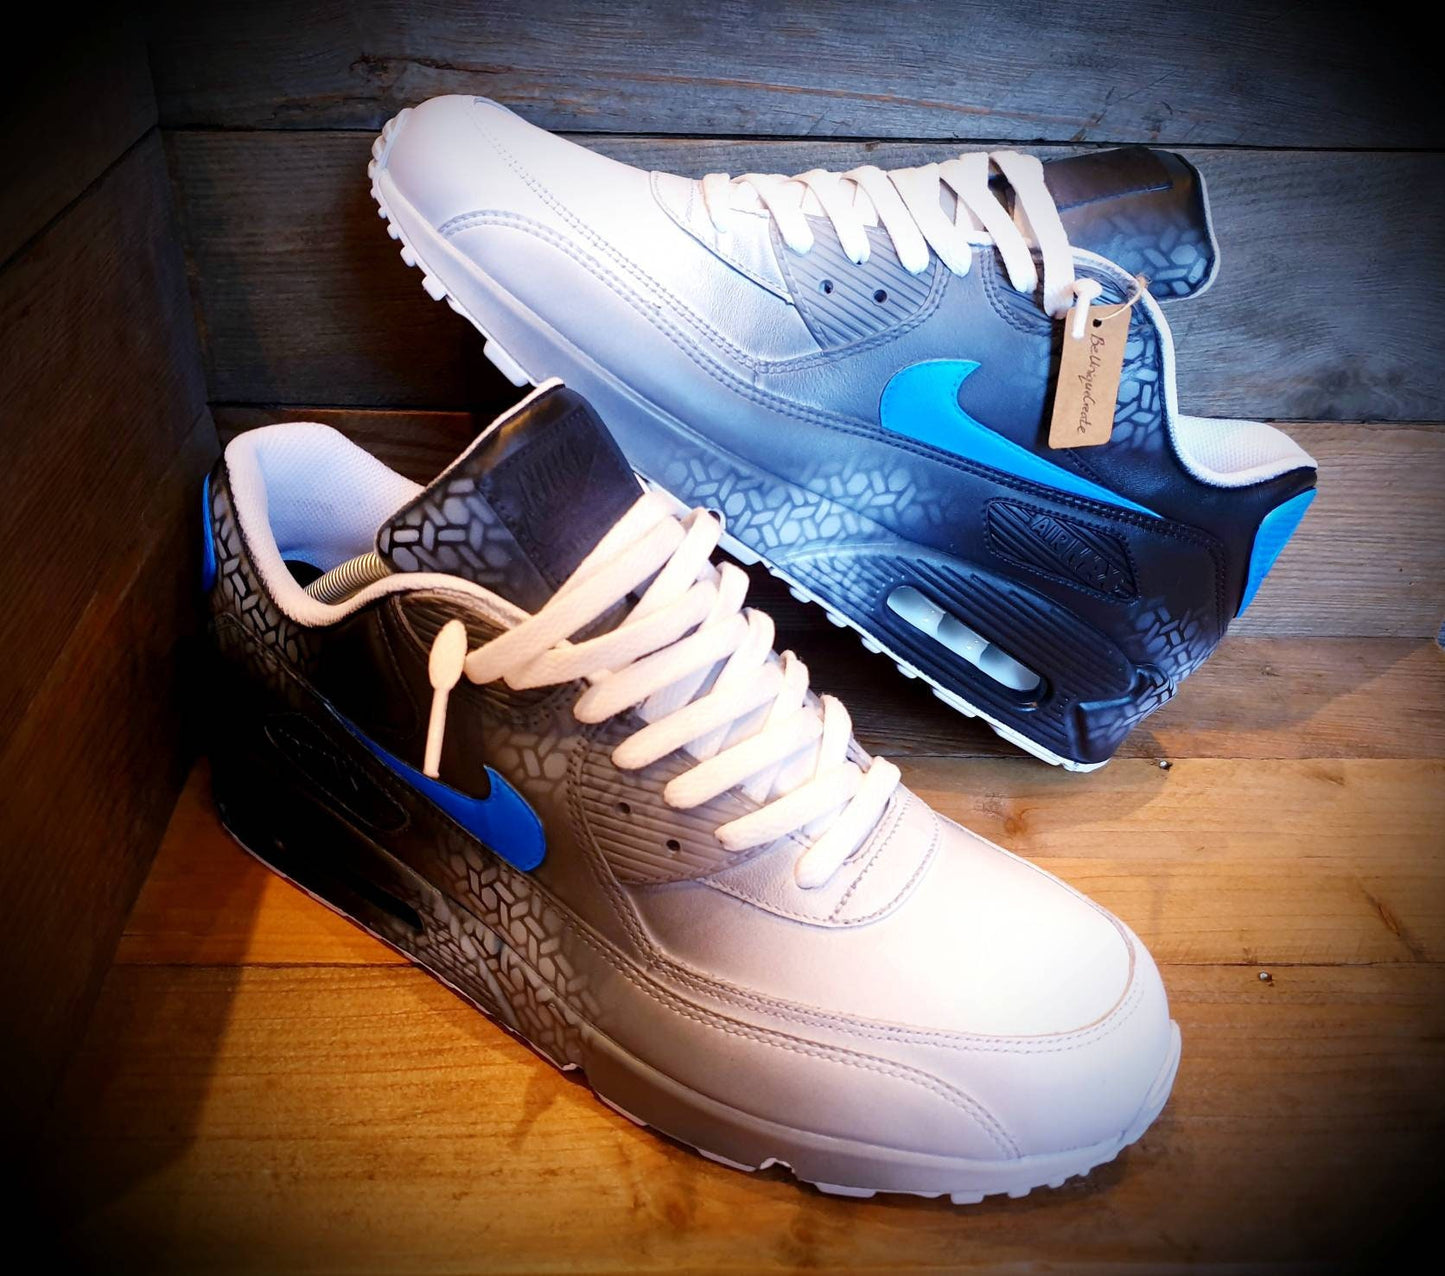 Custom Painted Air Max 90/Sneakers/Shoes/Kicks/Premium/Personalised/Neon Blue Graffiti